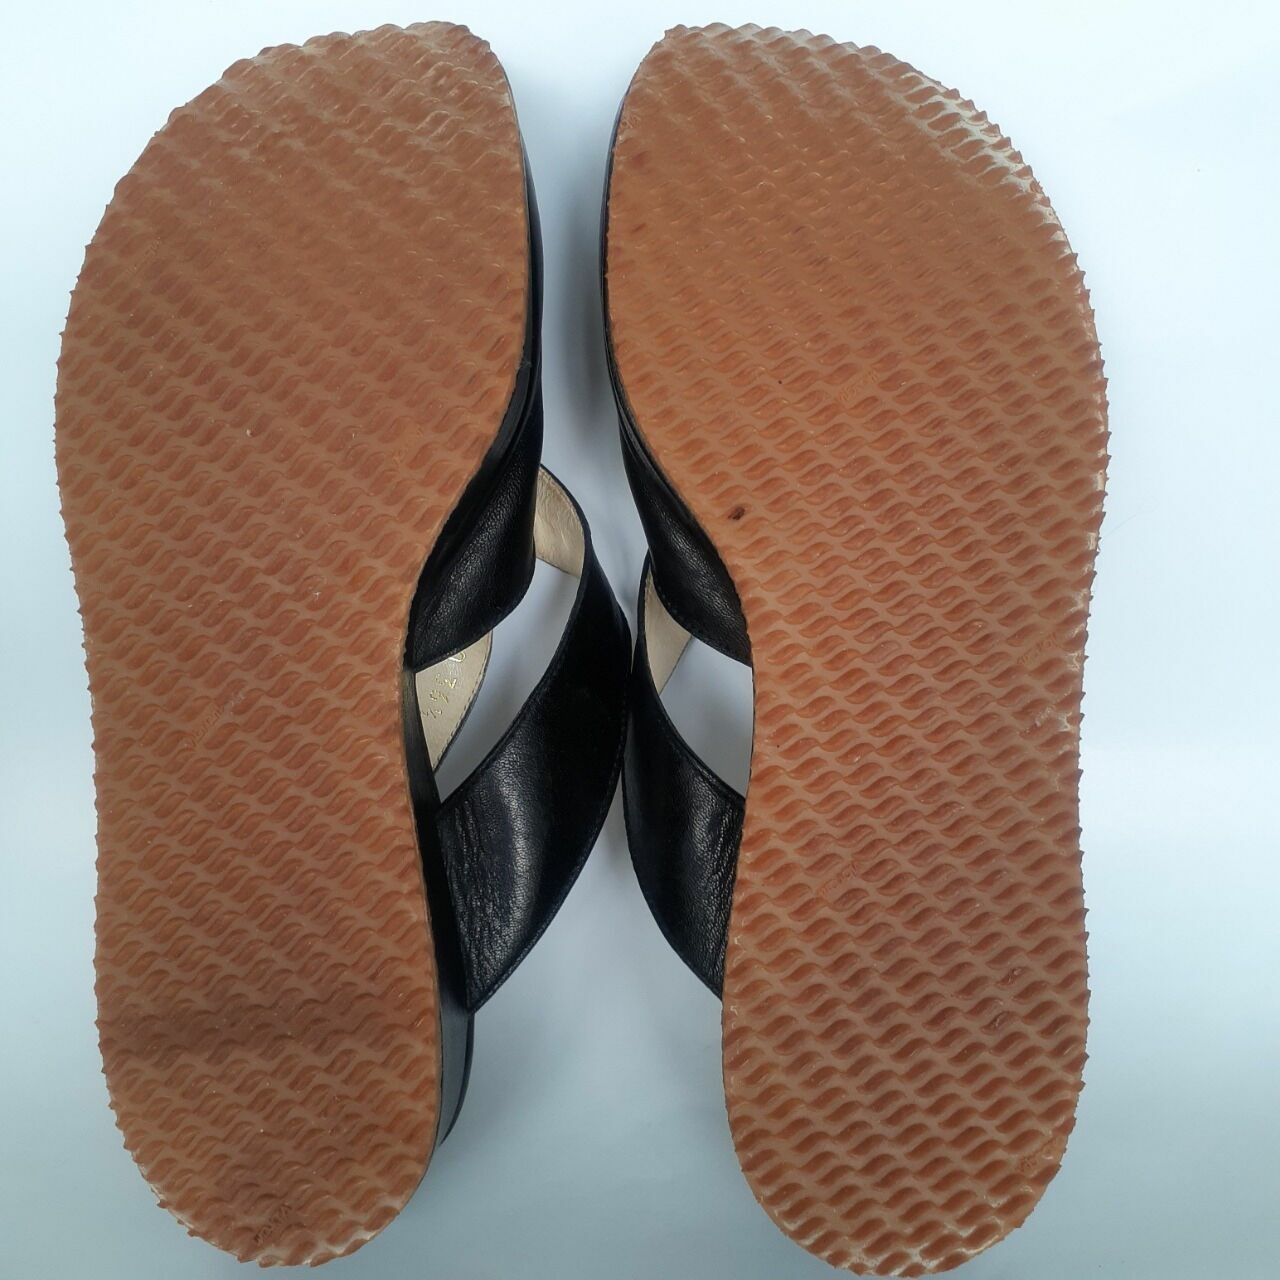 anteprima Black Sandals